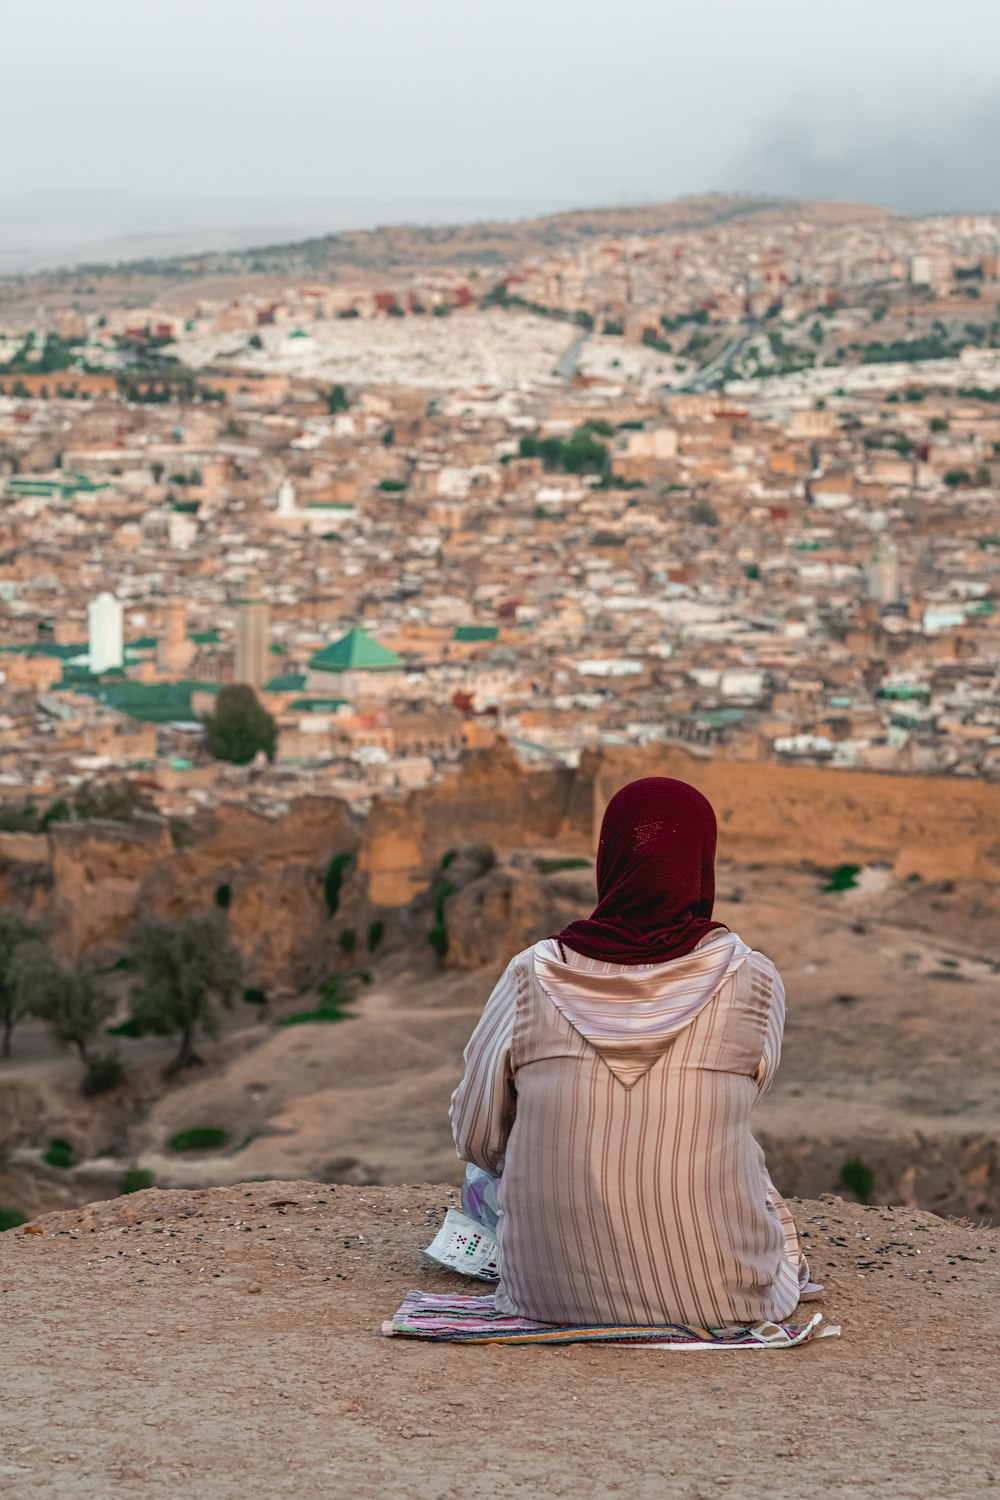 una persona sentada en una colina con vistas a una ciudad